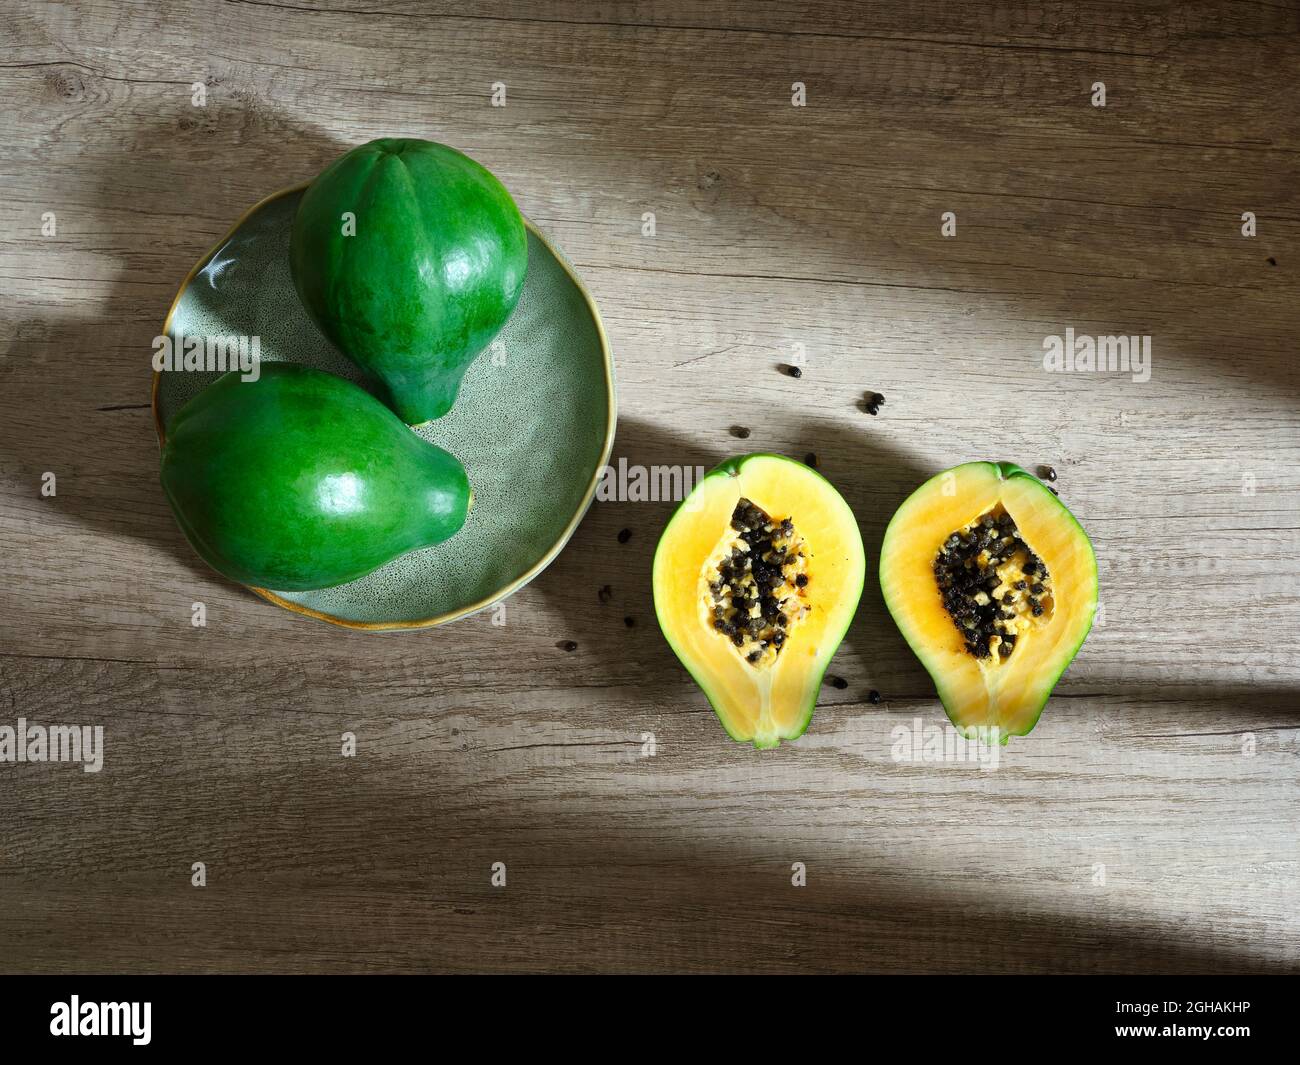 dos papayas enteras y dos mitades verdes sobre superficie de madera Foto de stock